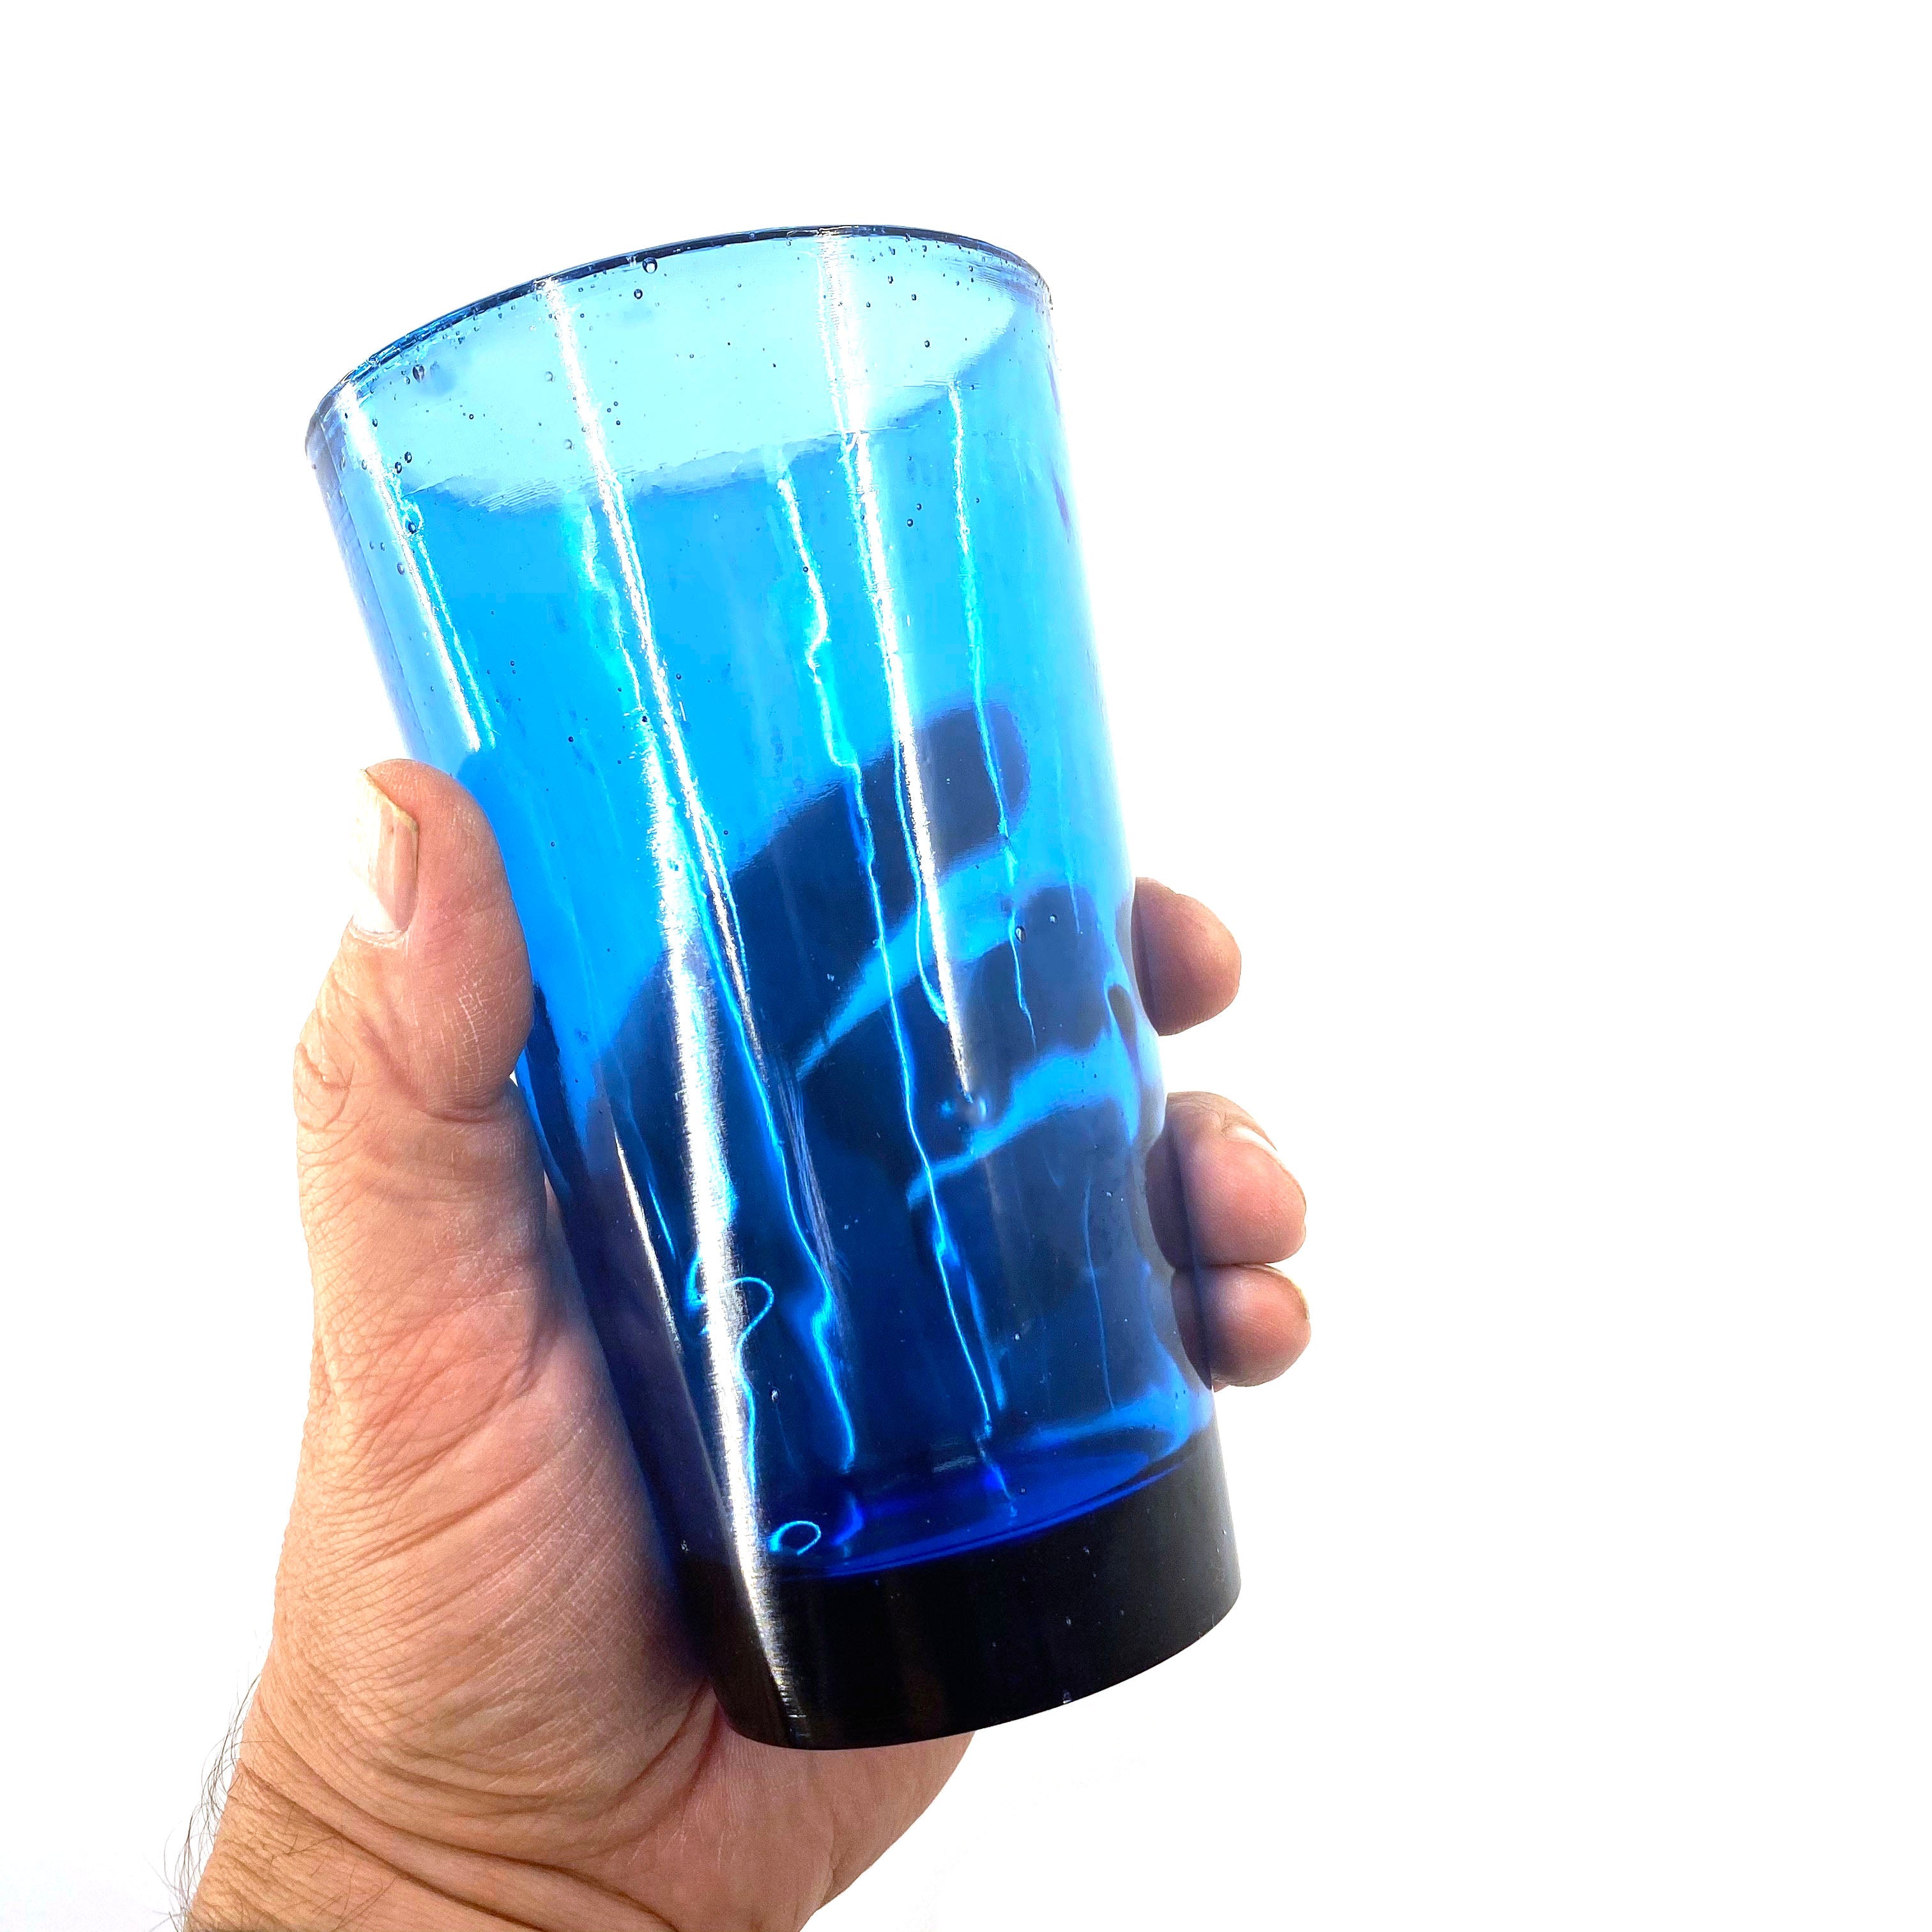 SMASHProps Breakaway Beer Pint Glass Prop - LIGHT BLUE translucent - Light Blue Translucent